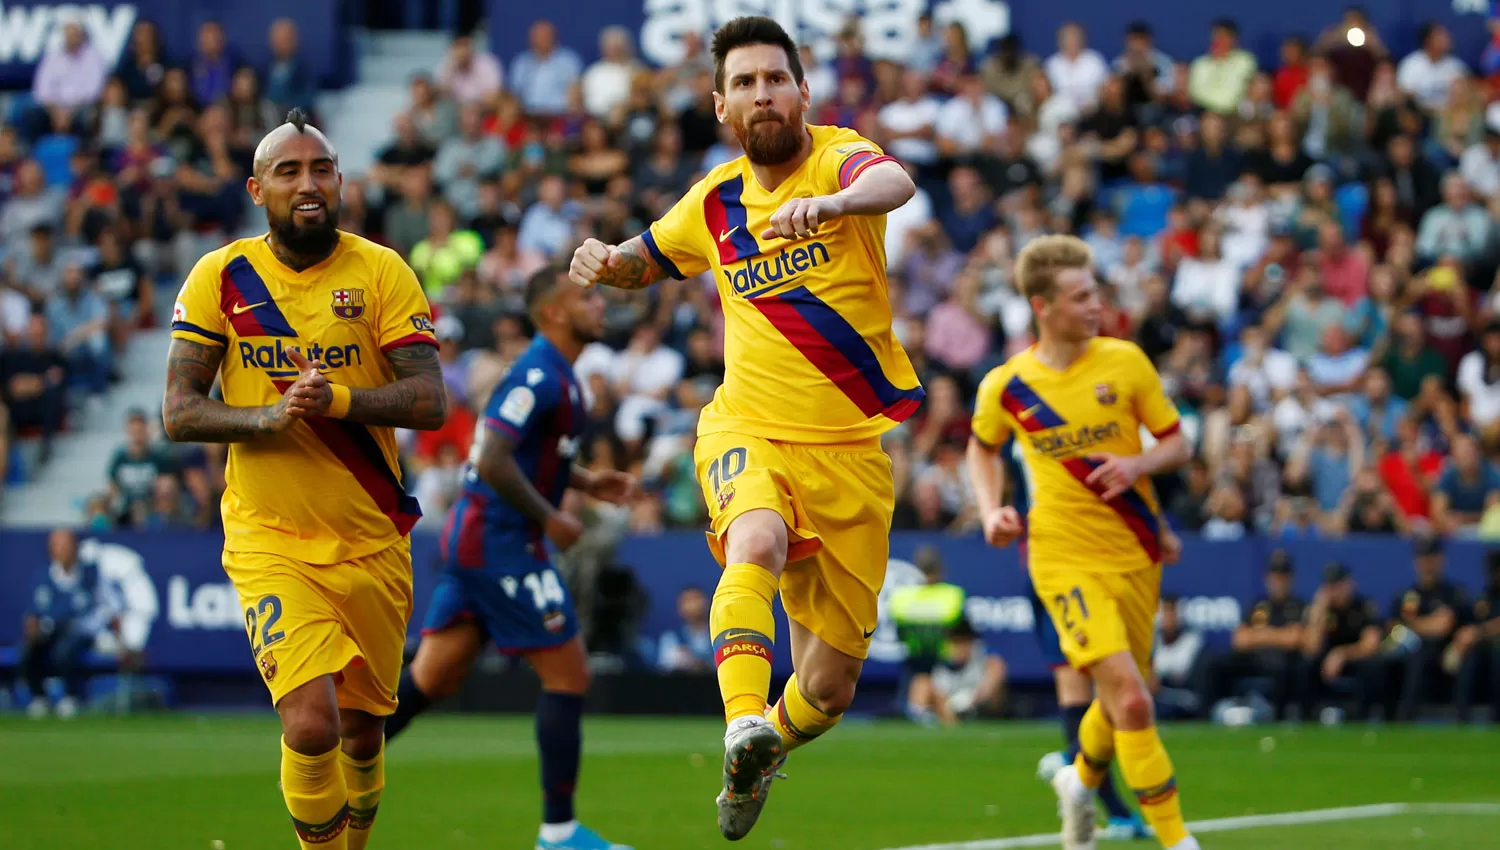 POR LA RECUPERACIÓN. El equipo de Messi perdió por la Liga ante Levante y buscará seguir en la cima de su grupo en la Champios.